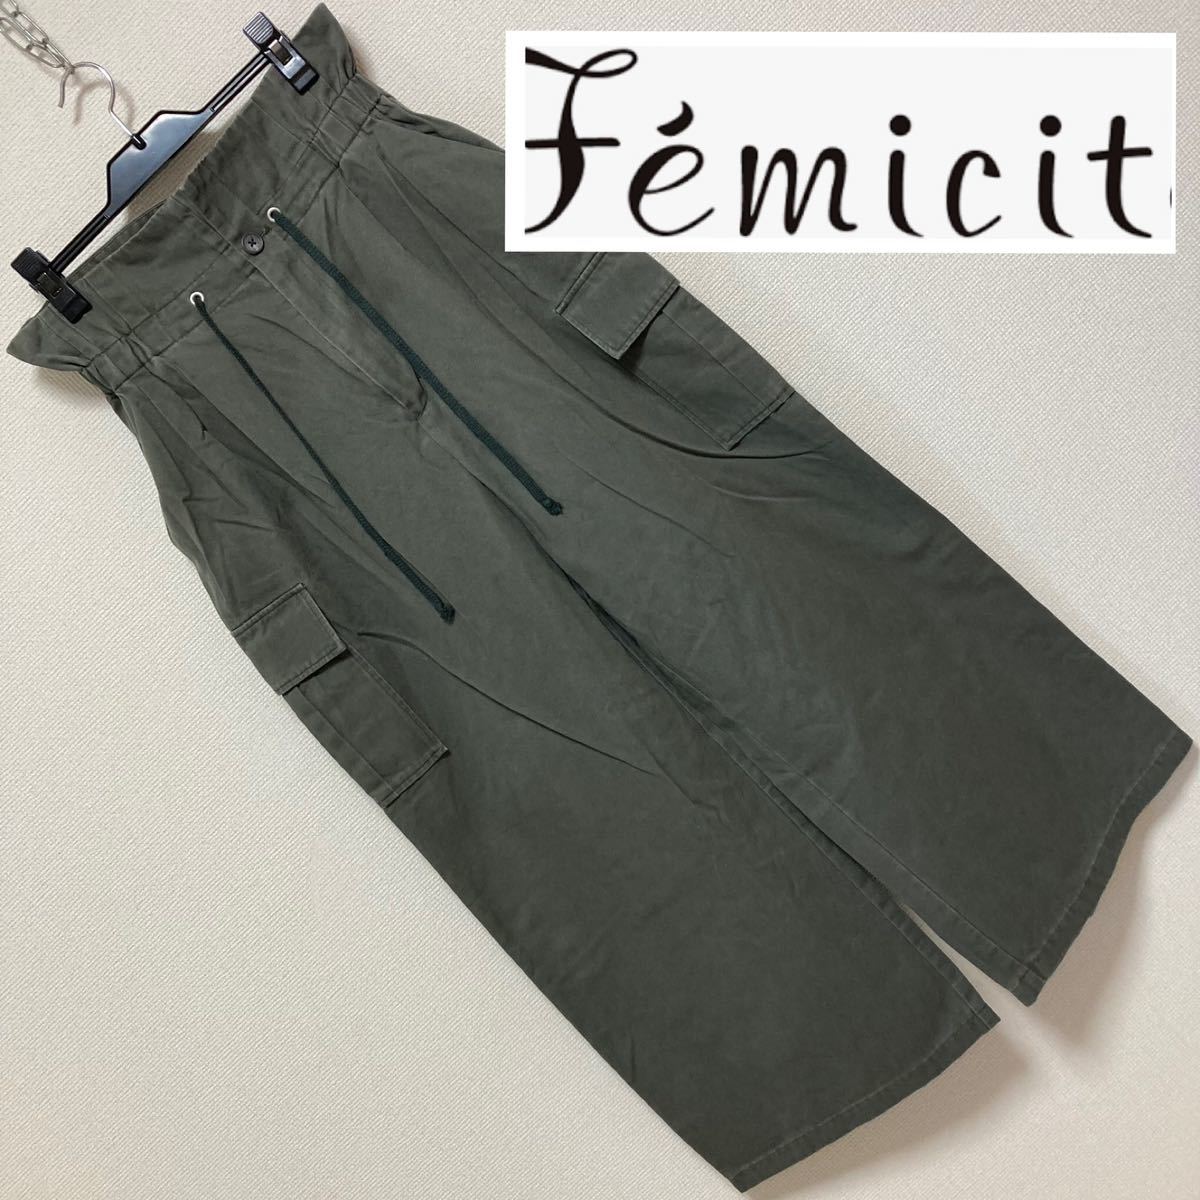 Хорошее качество ■ Женские прохладные калеанты ■ Чино с высокой талией широкие грузовые штаны 40 л зеленые хаки оливковые багги феминит